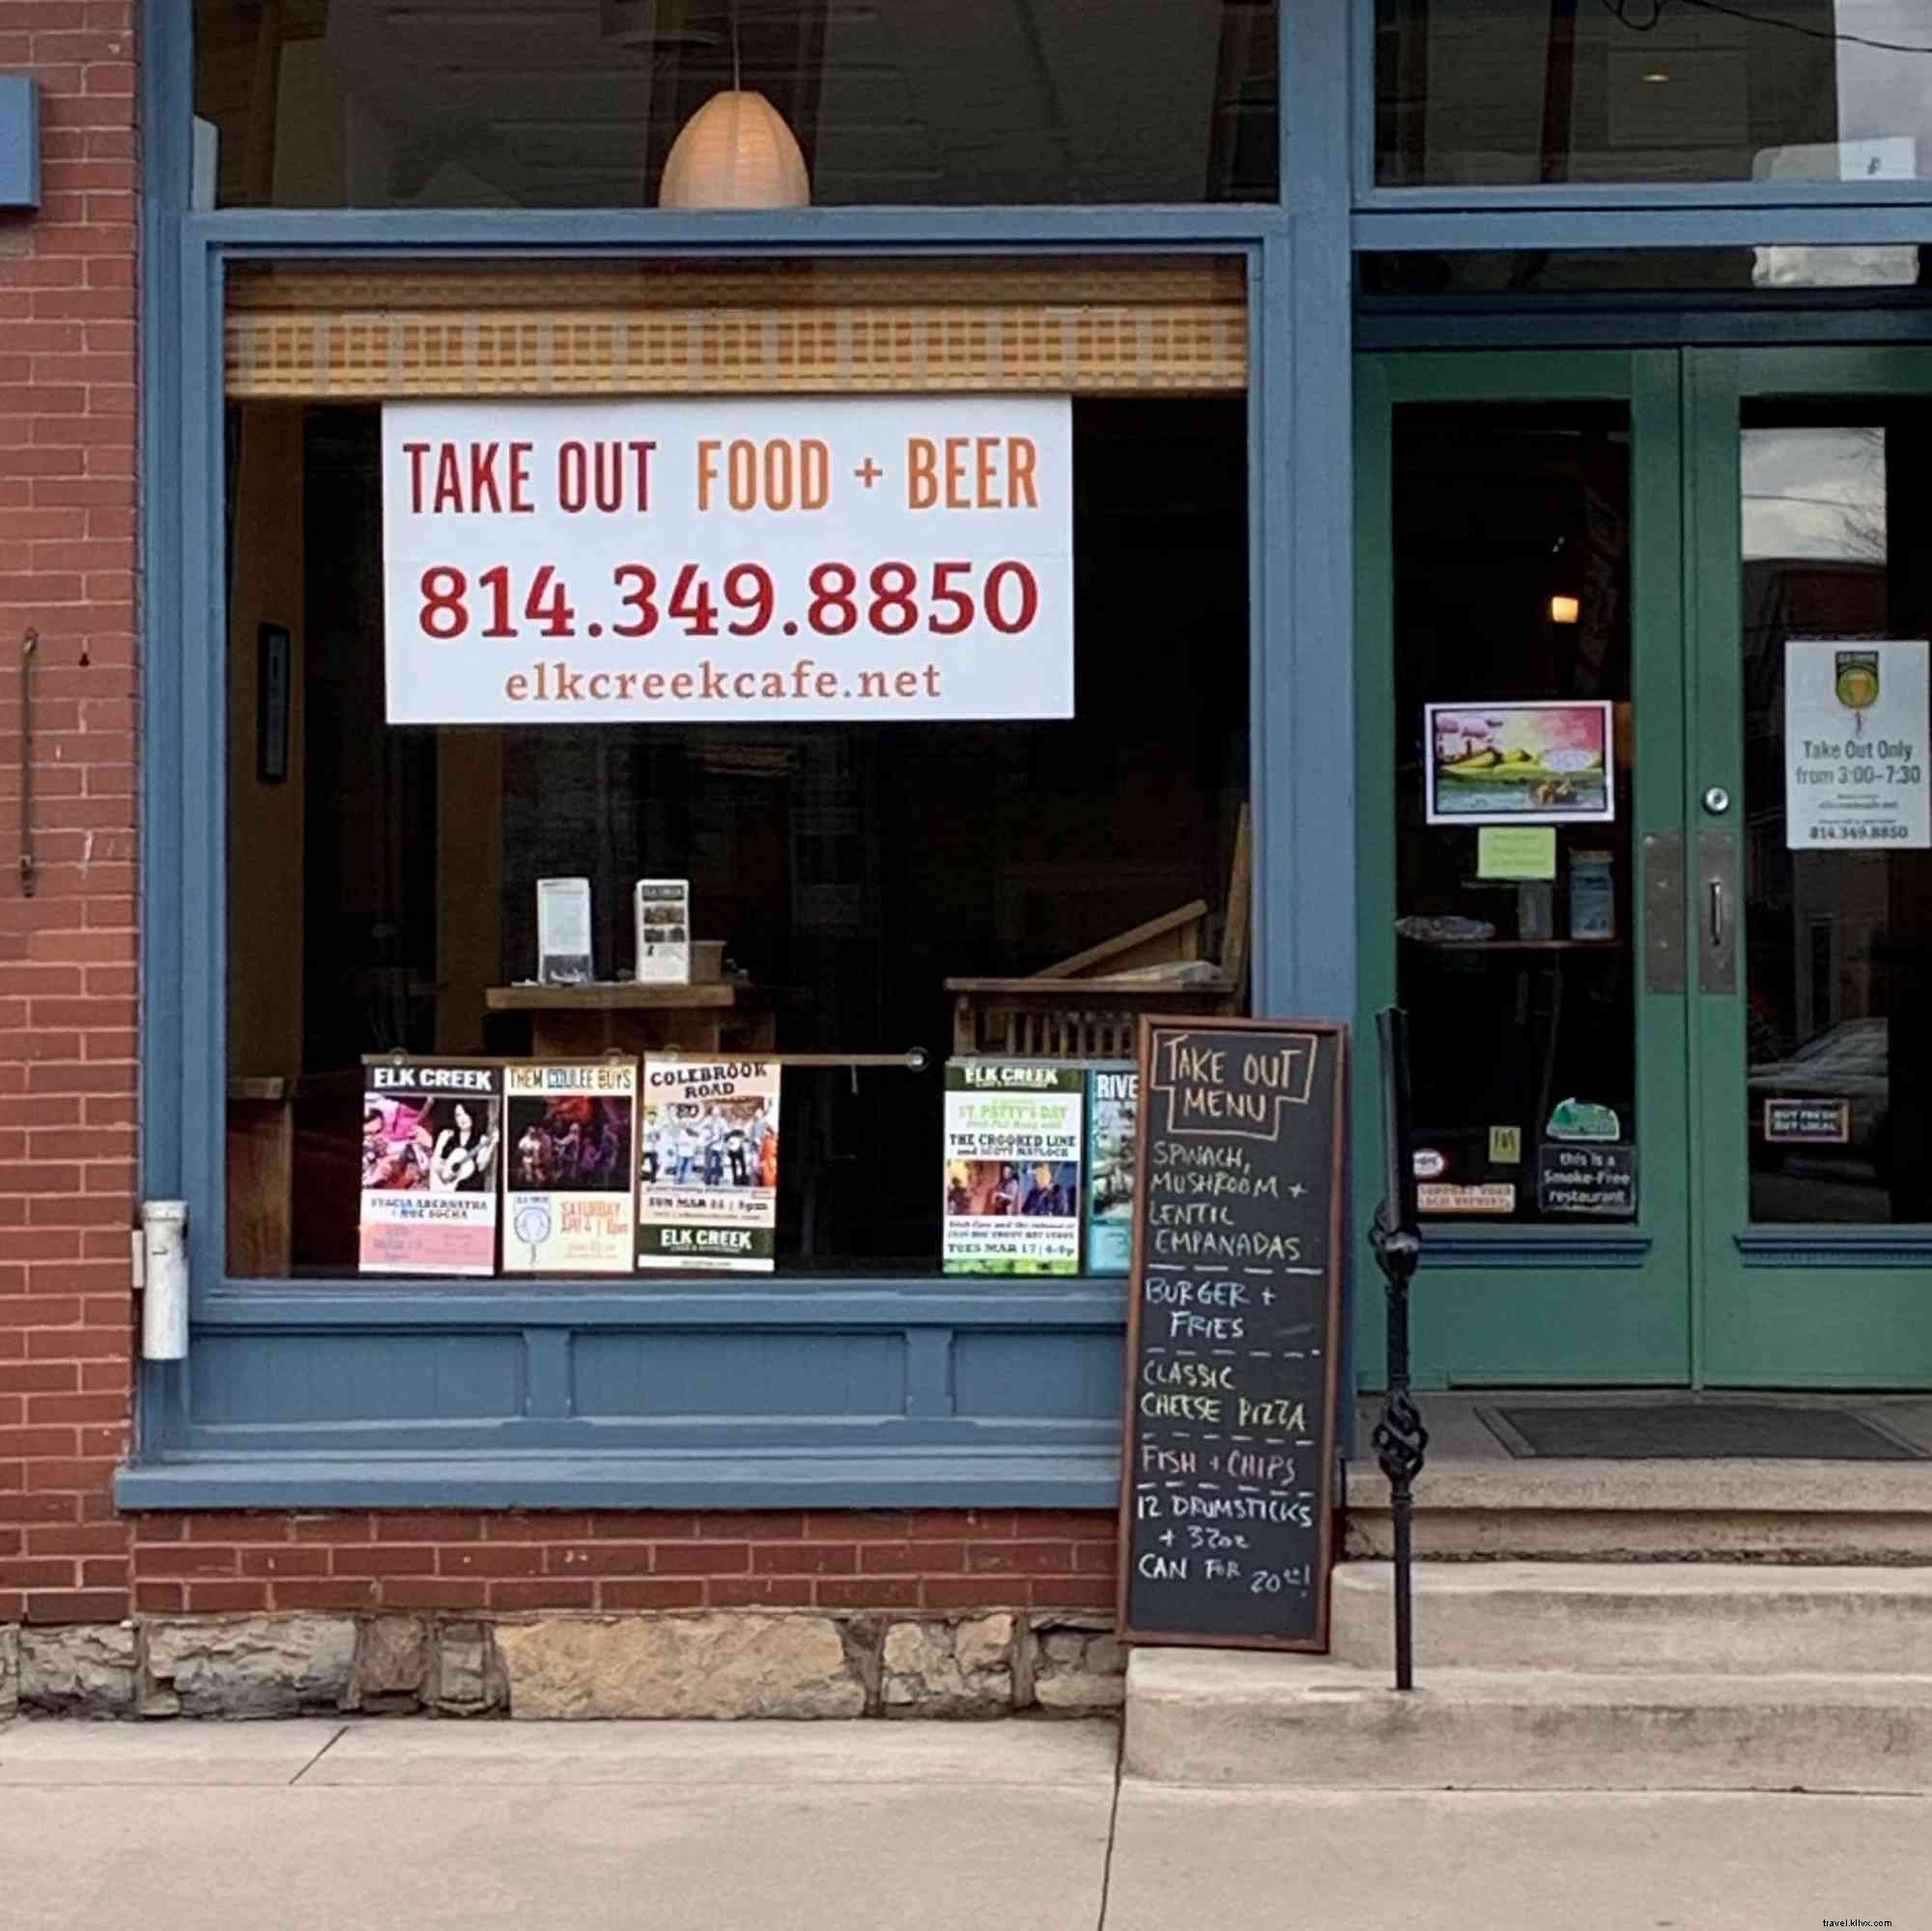 O lk Creek Café vende cervejas e alimentos em vários locais 